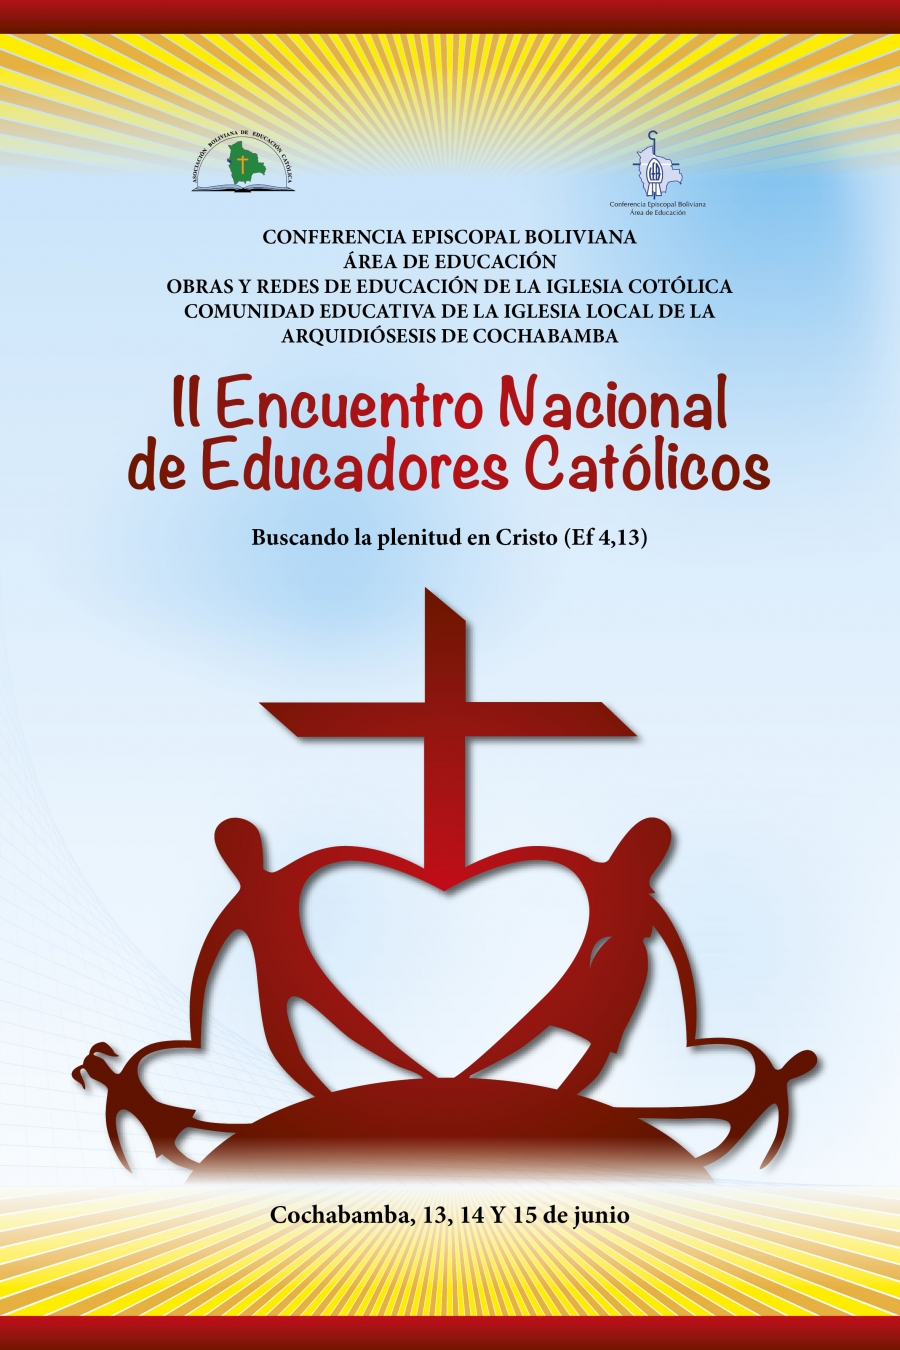 La archidicesis de Cochabamba acoger el II Encuentro Nacional de Educadores Catlicos de Bolivia